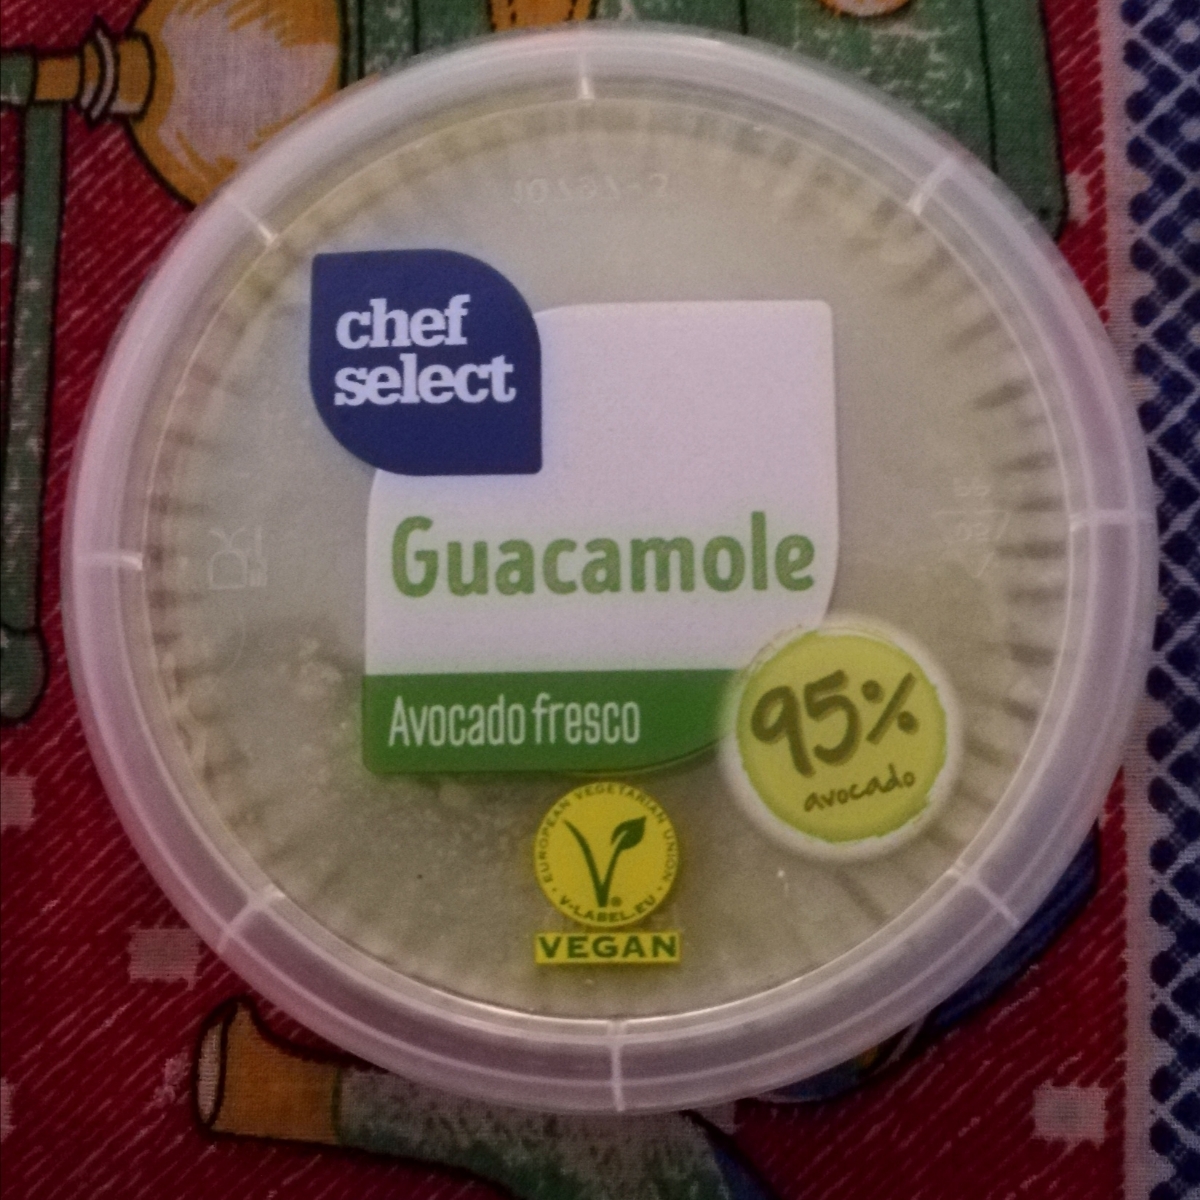 Chef Select Guacamole (\